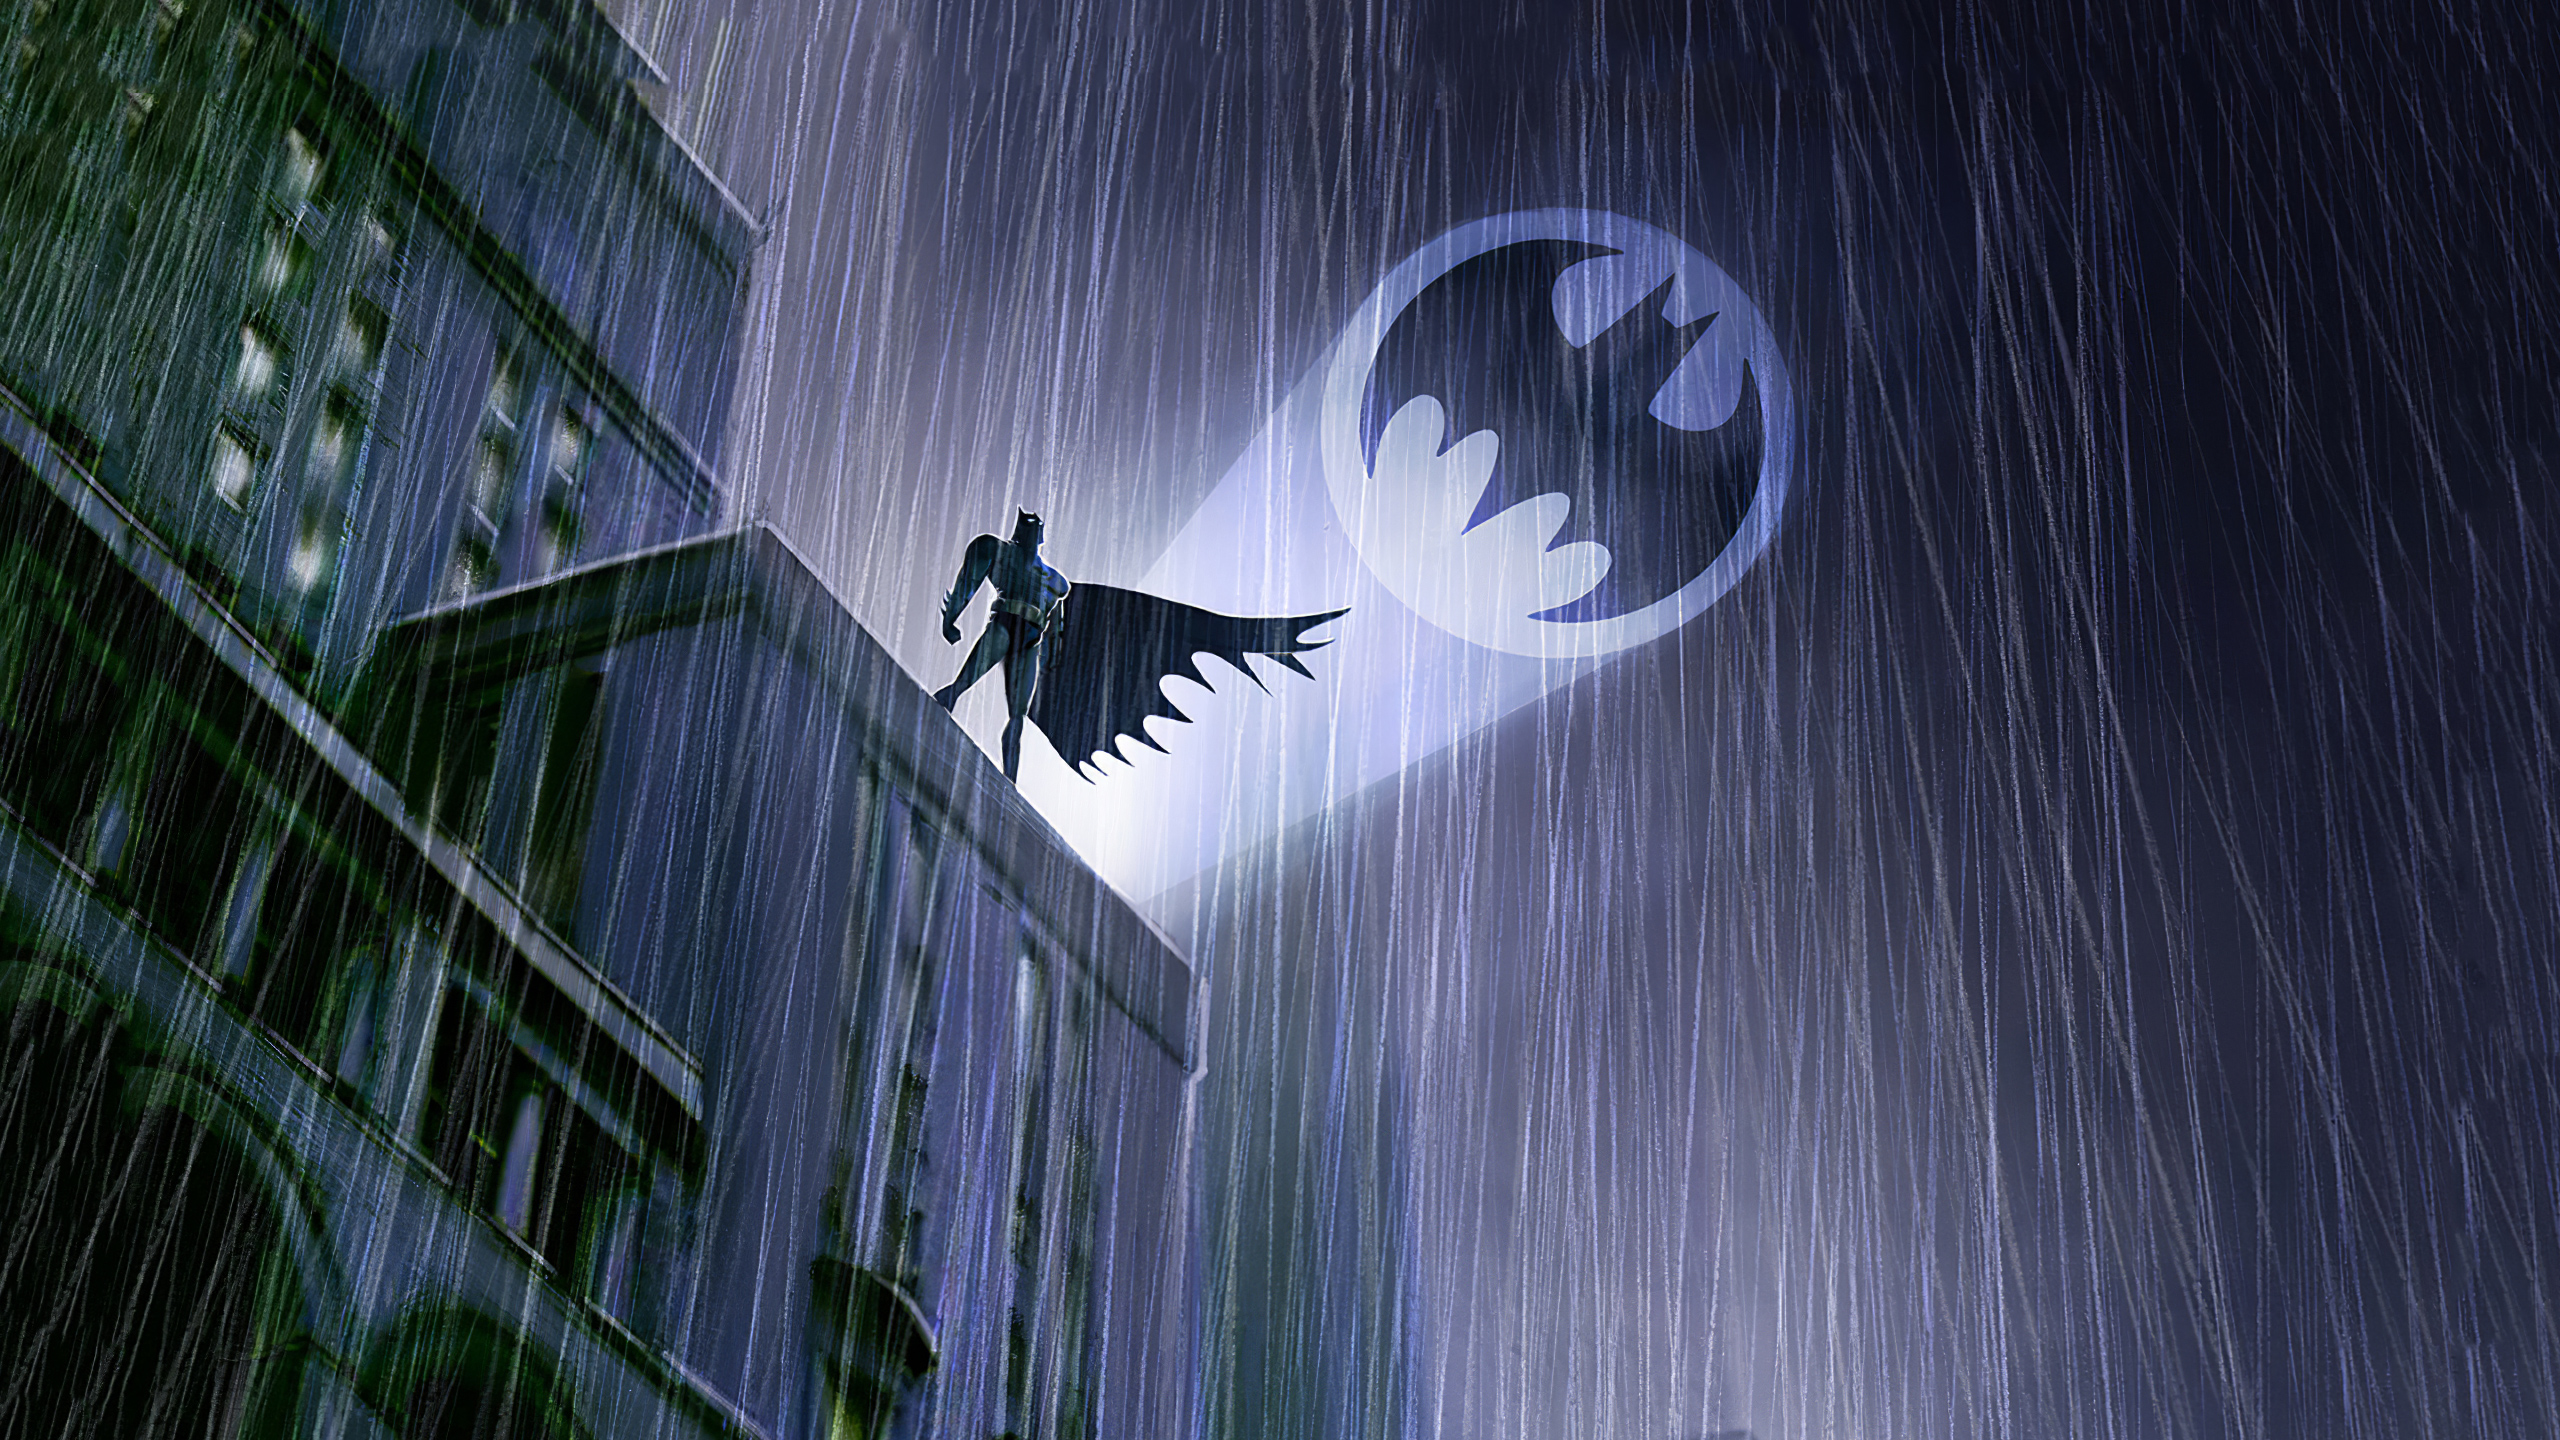 Dc Comics Bat Signal Wallpaper:2560x1440